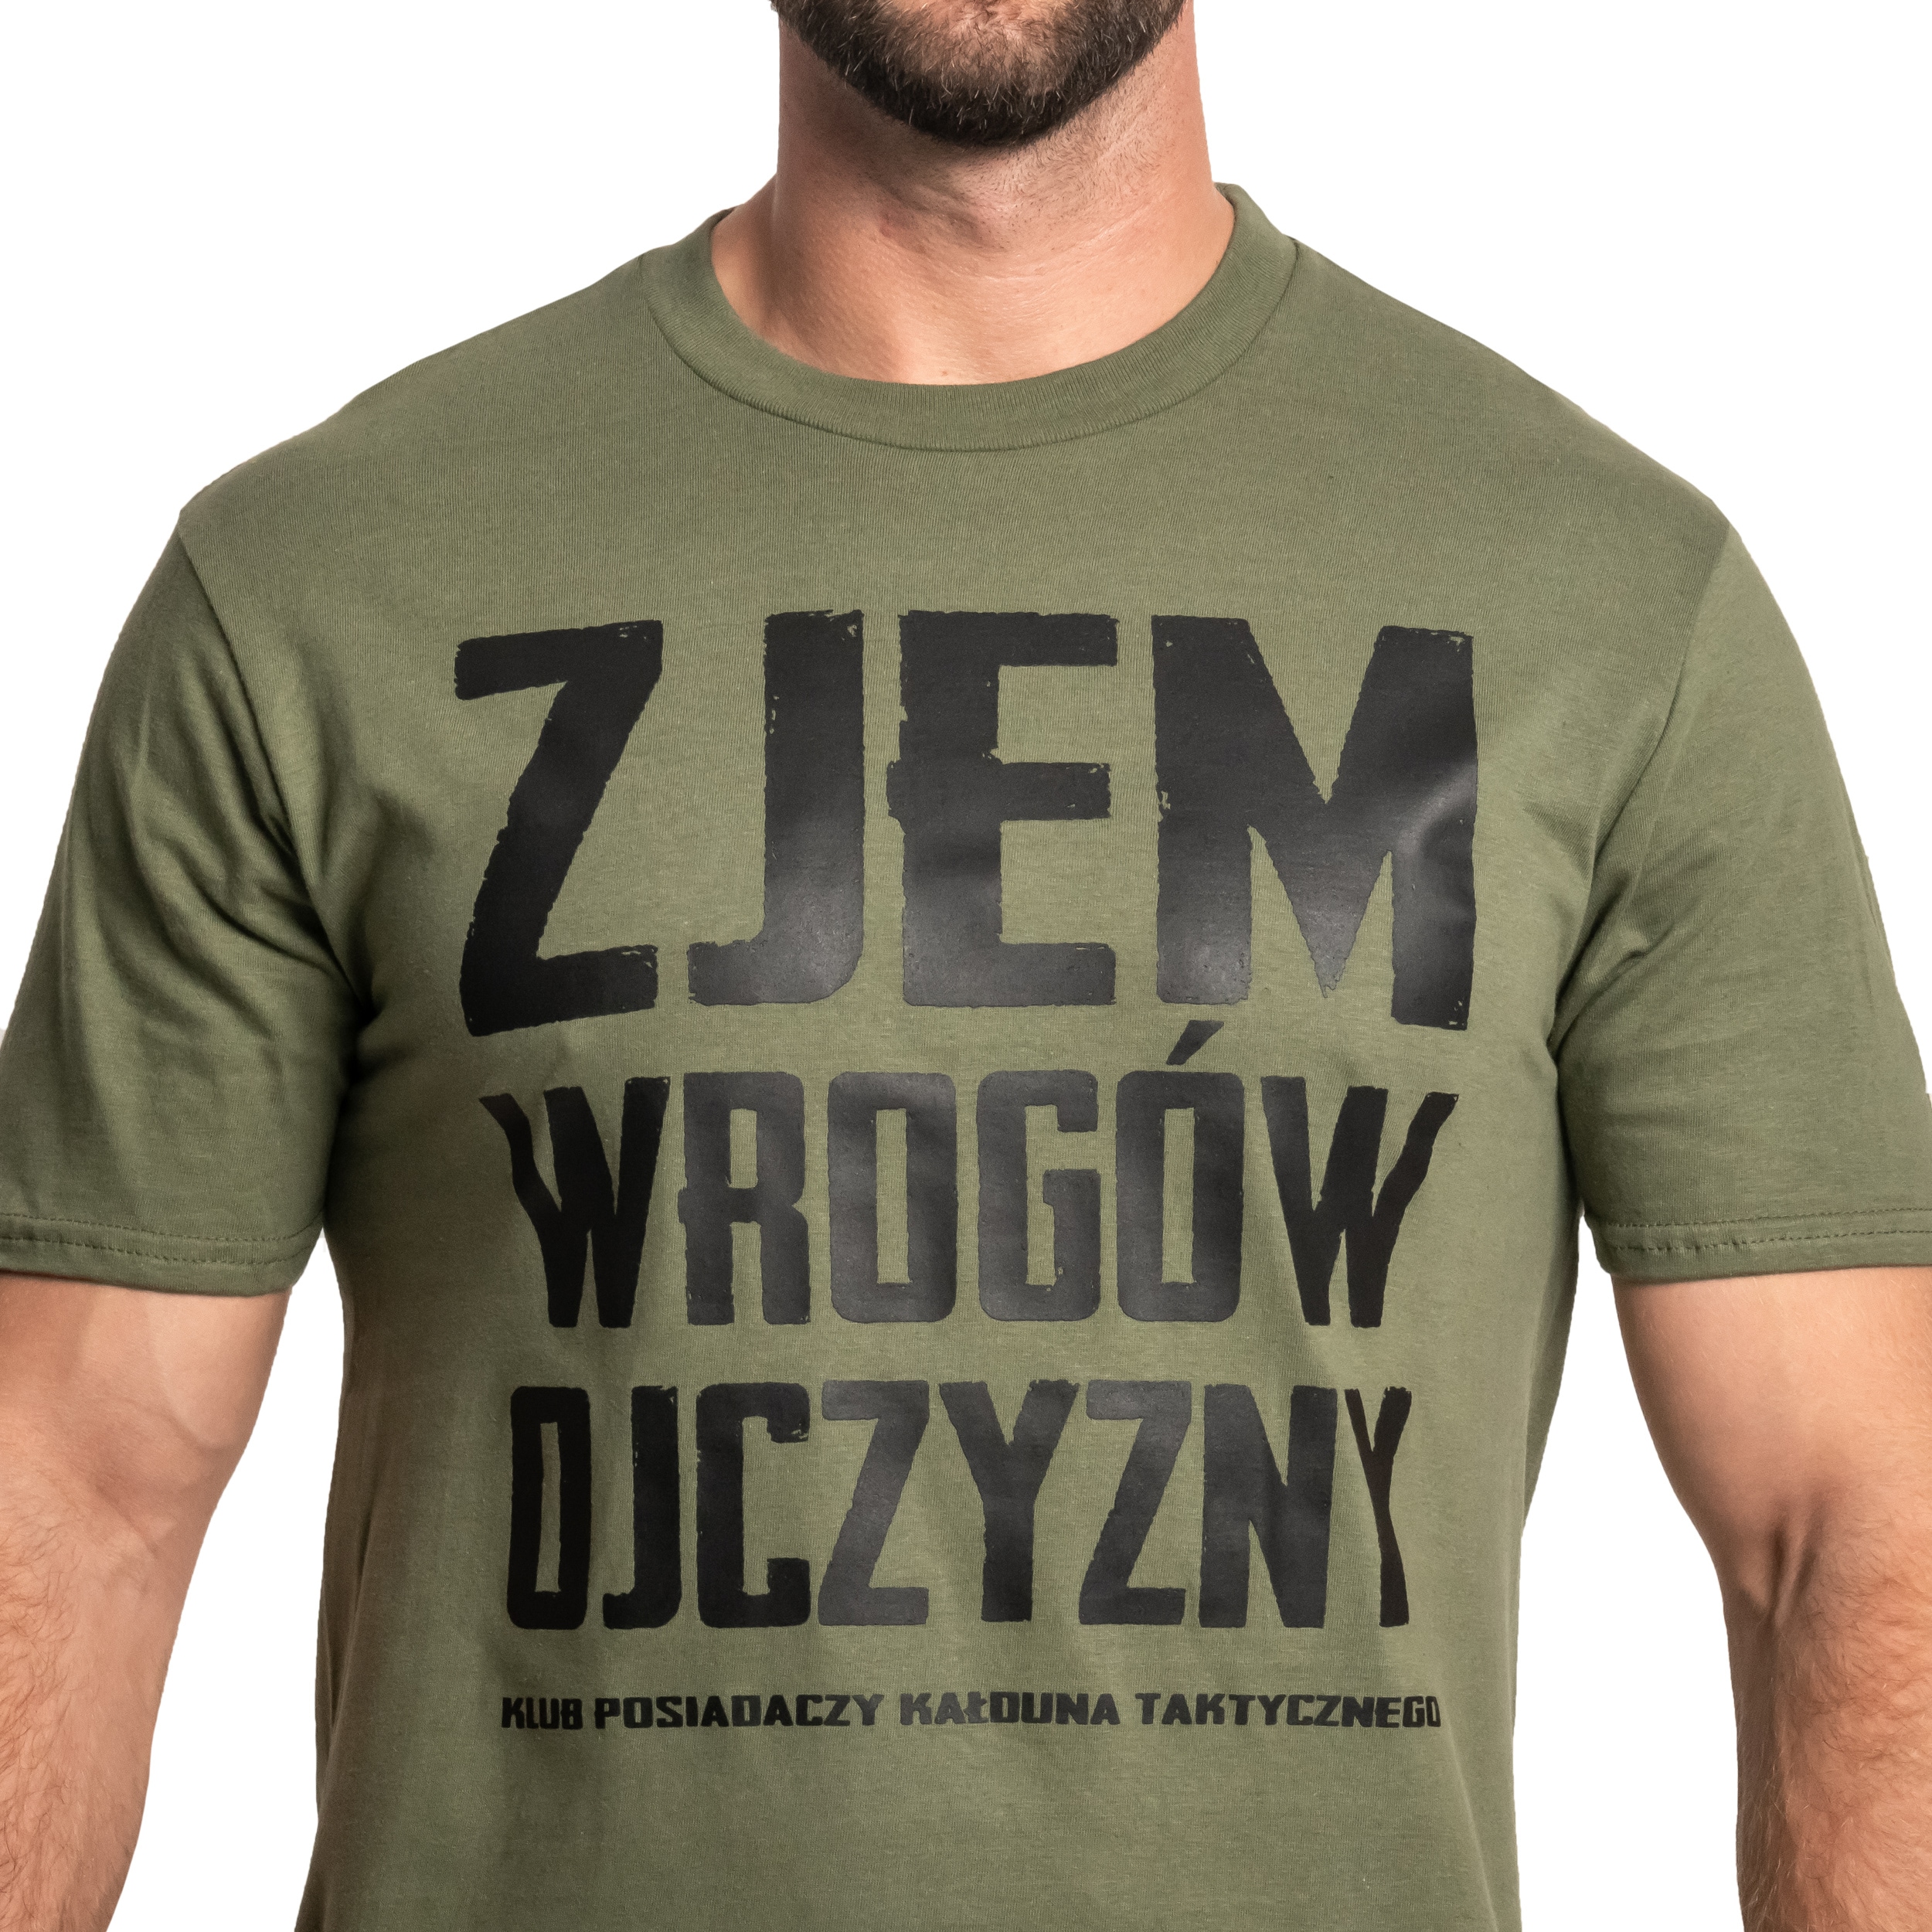 Футболка T-shirt Kałdun Zjem Wrogów Ojczyzny - Зелена/Чорна